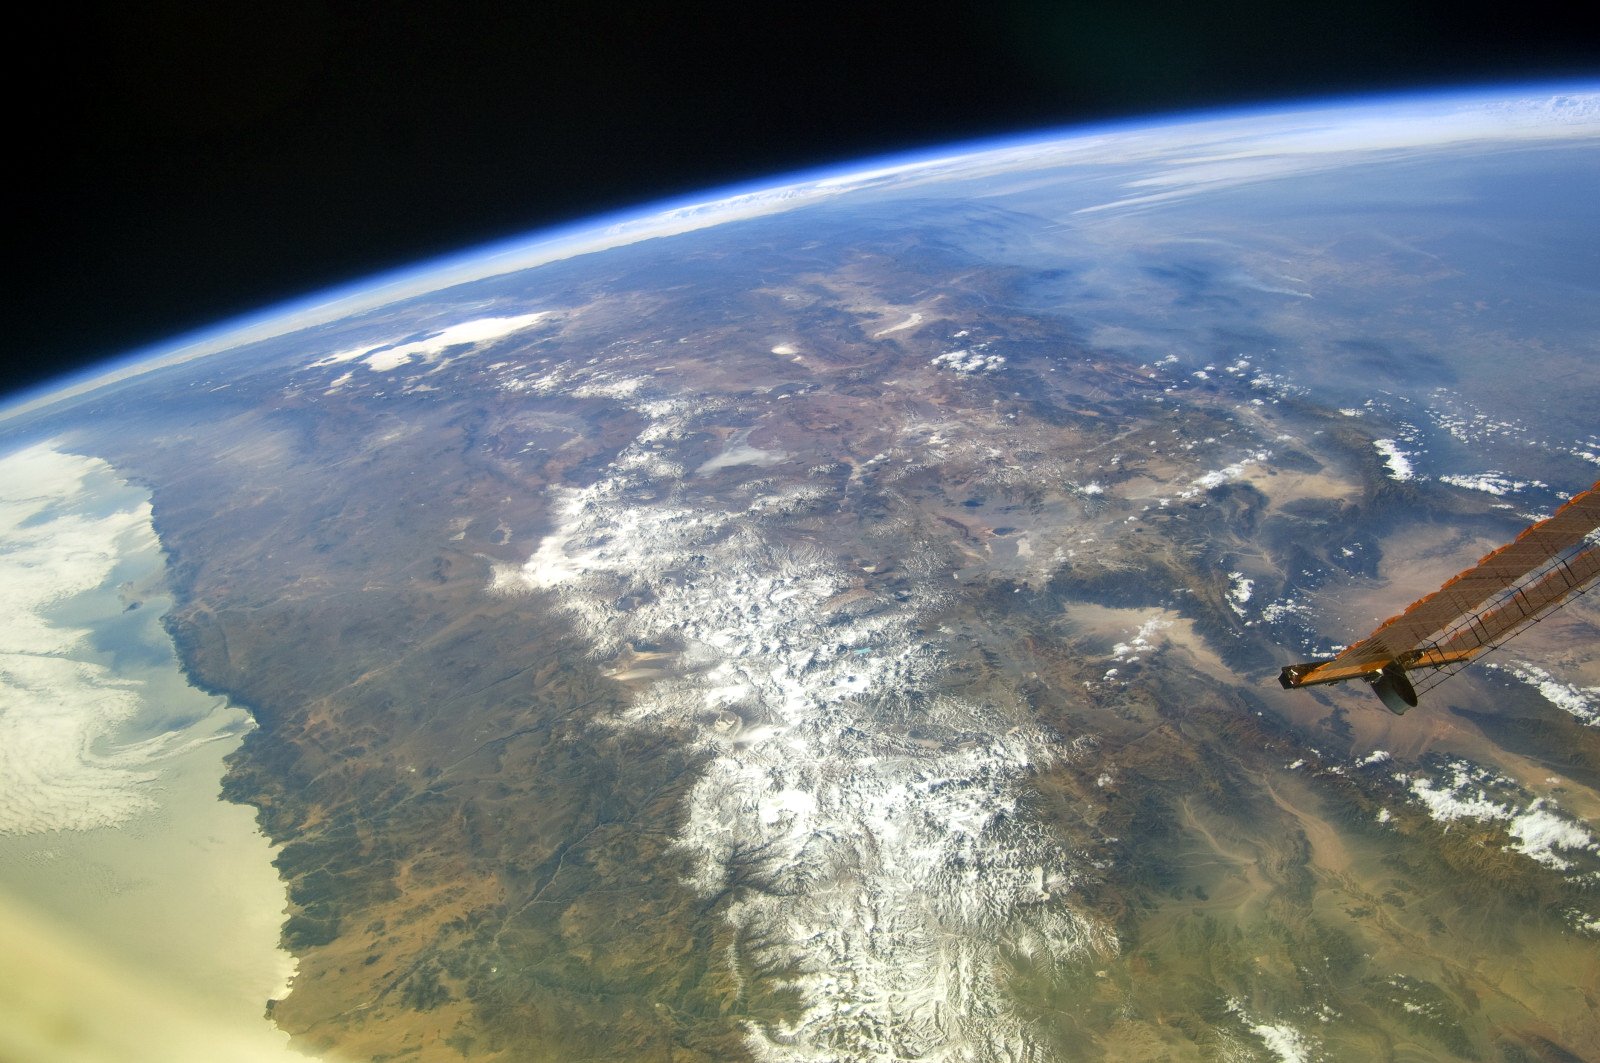 Фото со спутника в реальном времени бесплатно кемерово